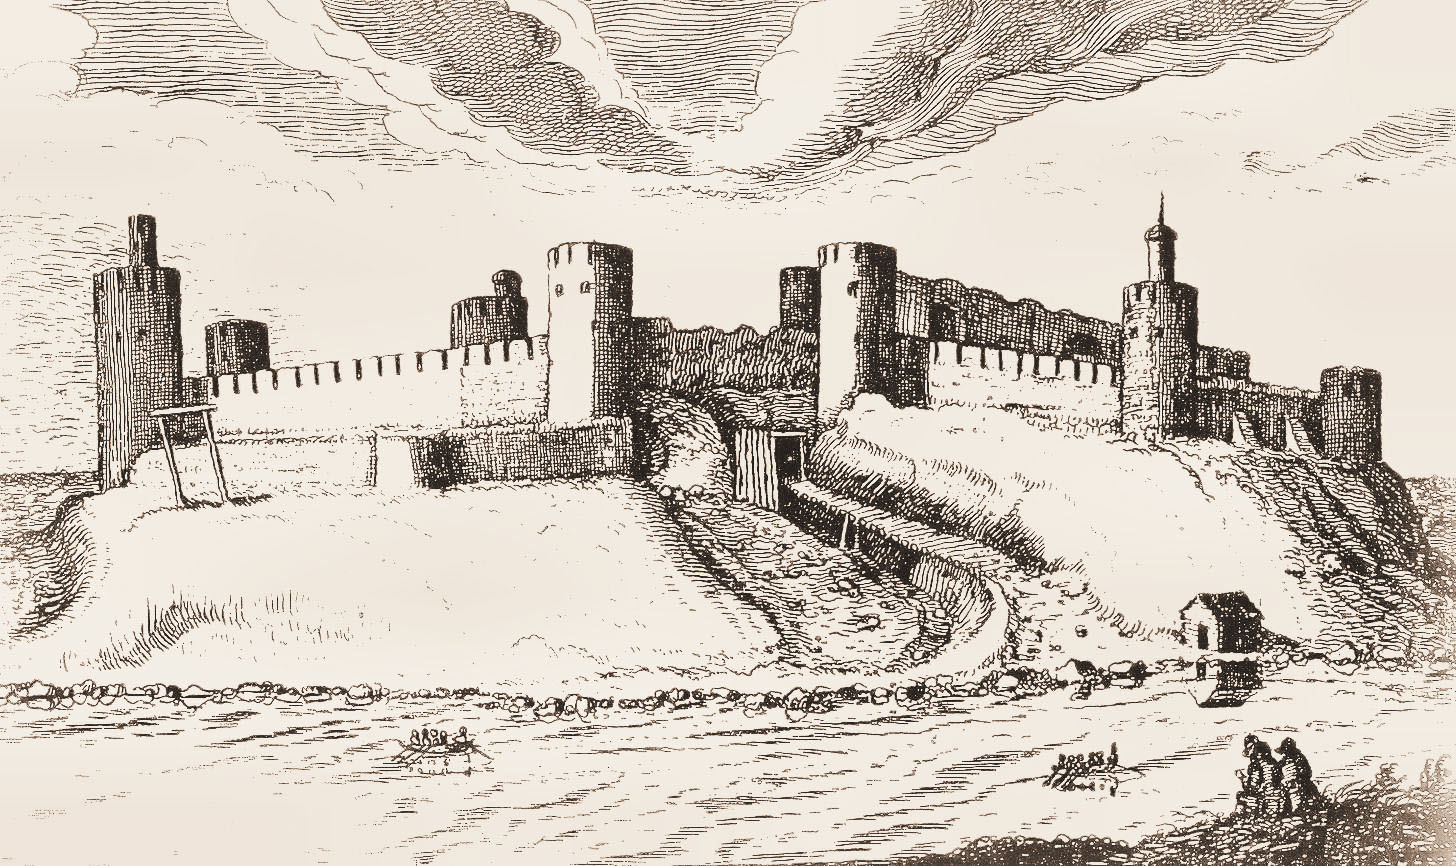 Вид крепости Ивангород в 1616 году